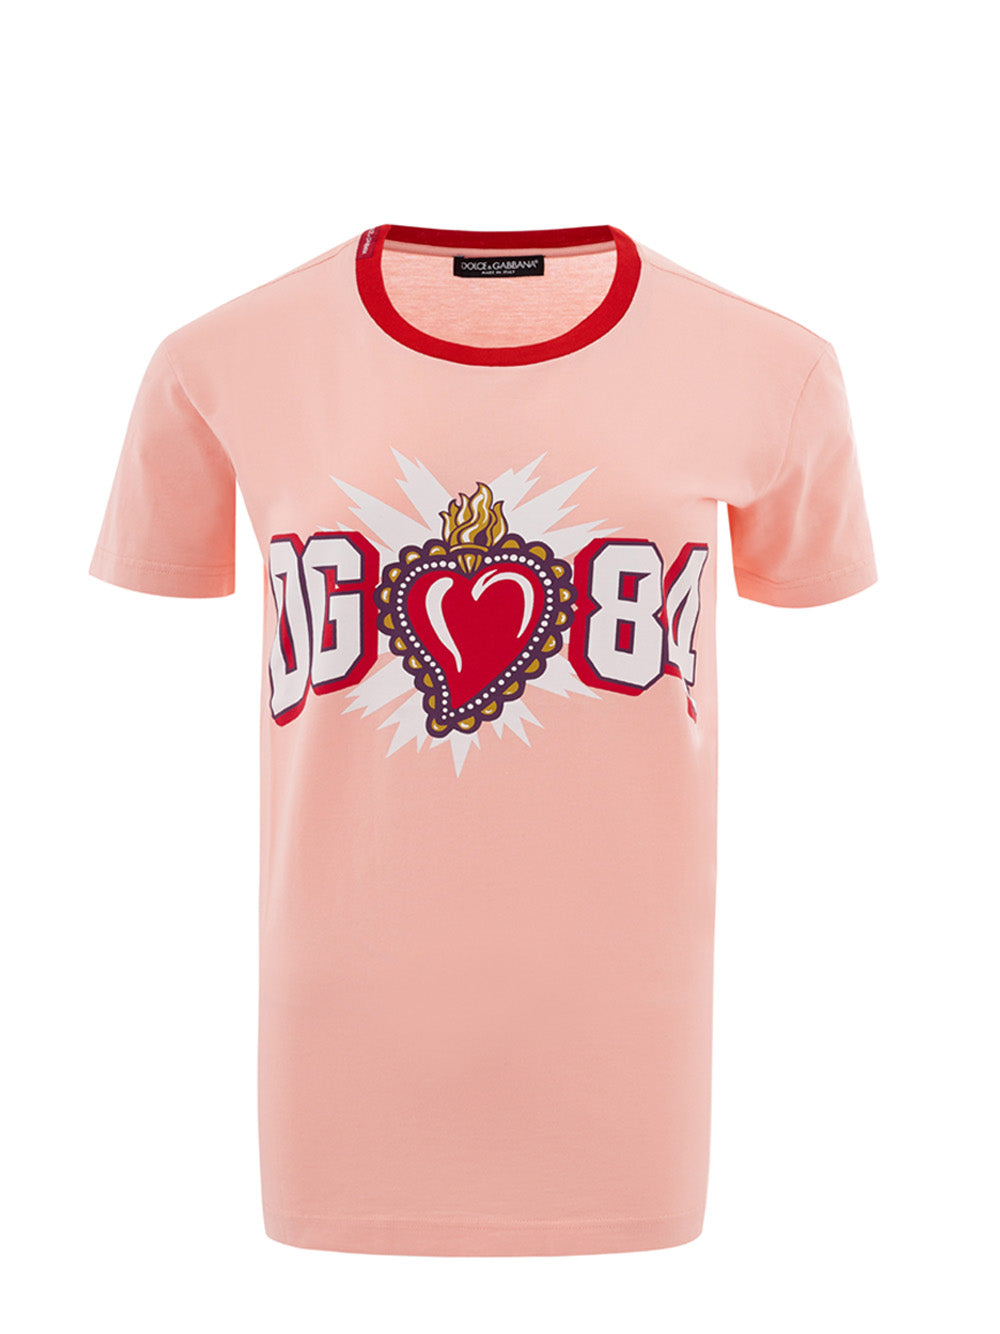 DOLCE & GABBANA Dolce & Gabbana  Cotton T-Shirt with printed Women's Logo